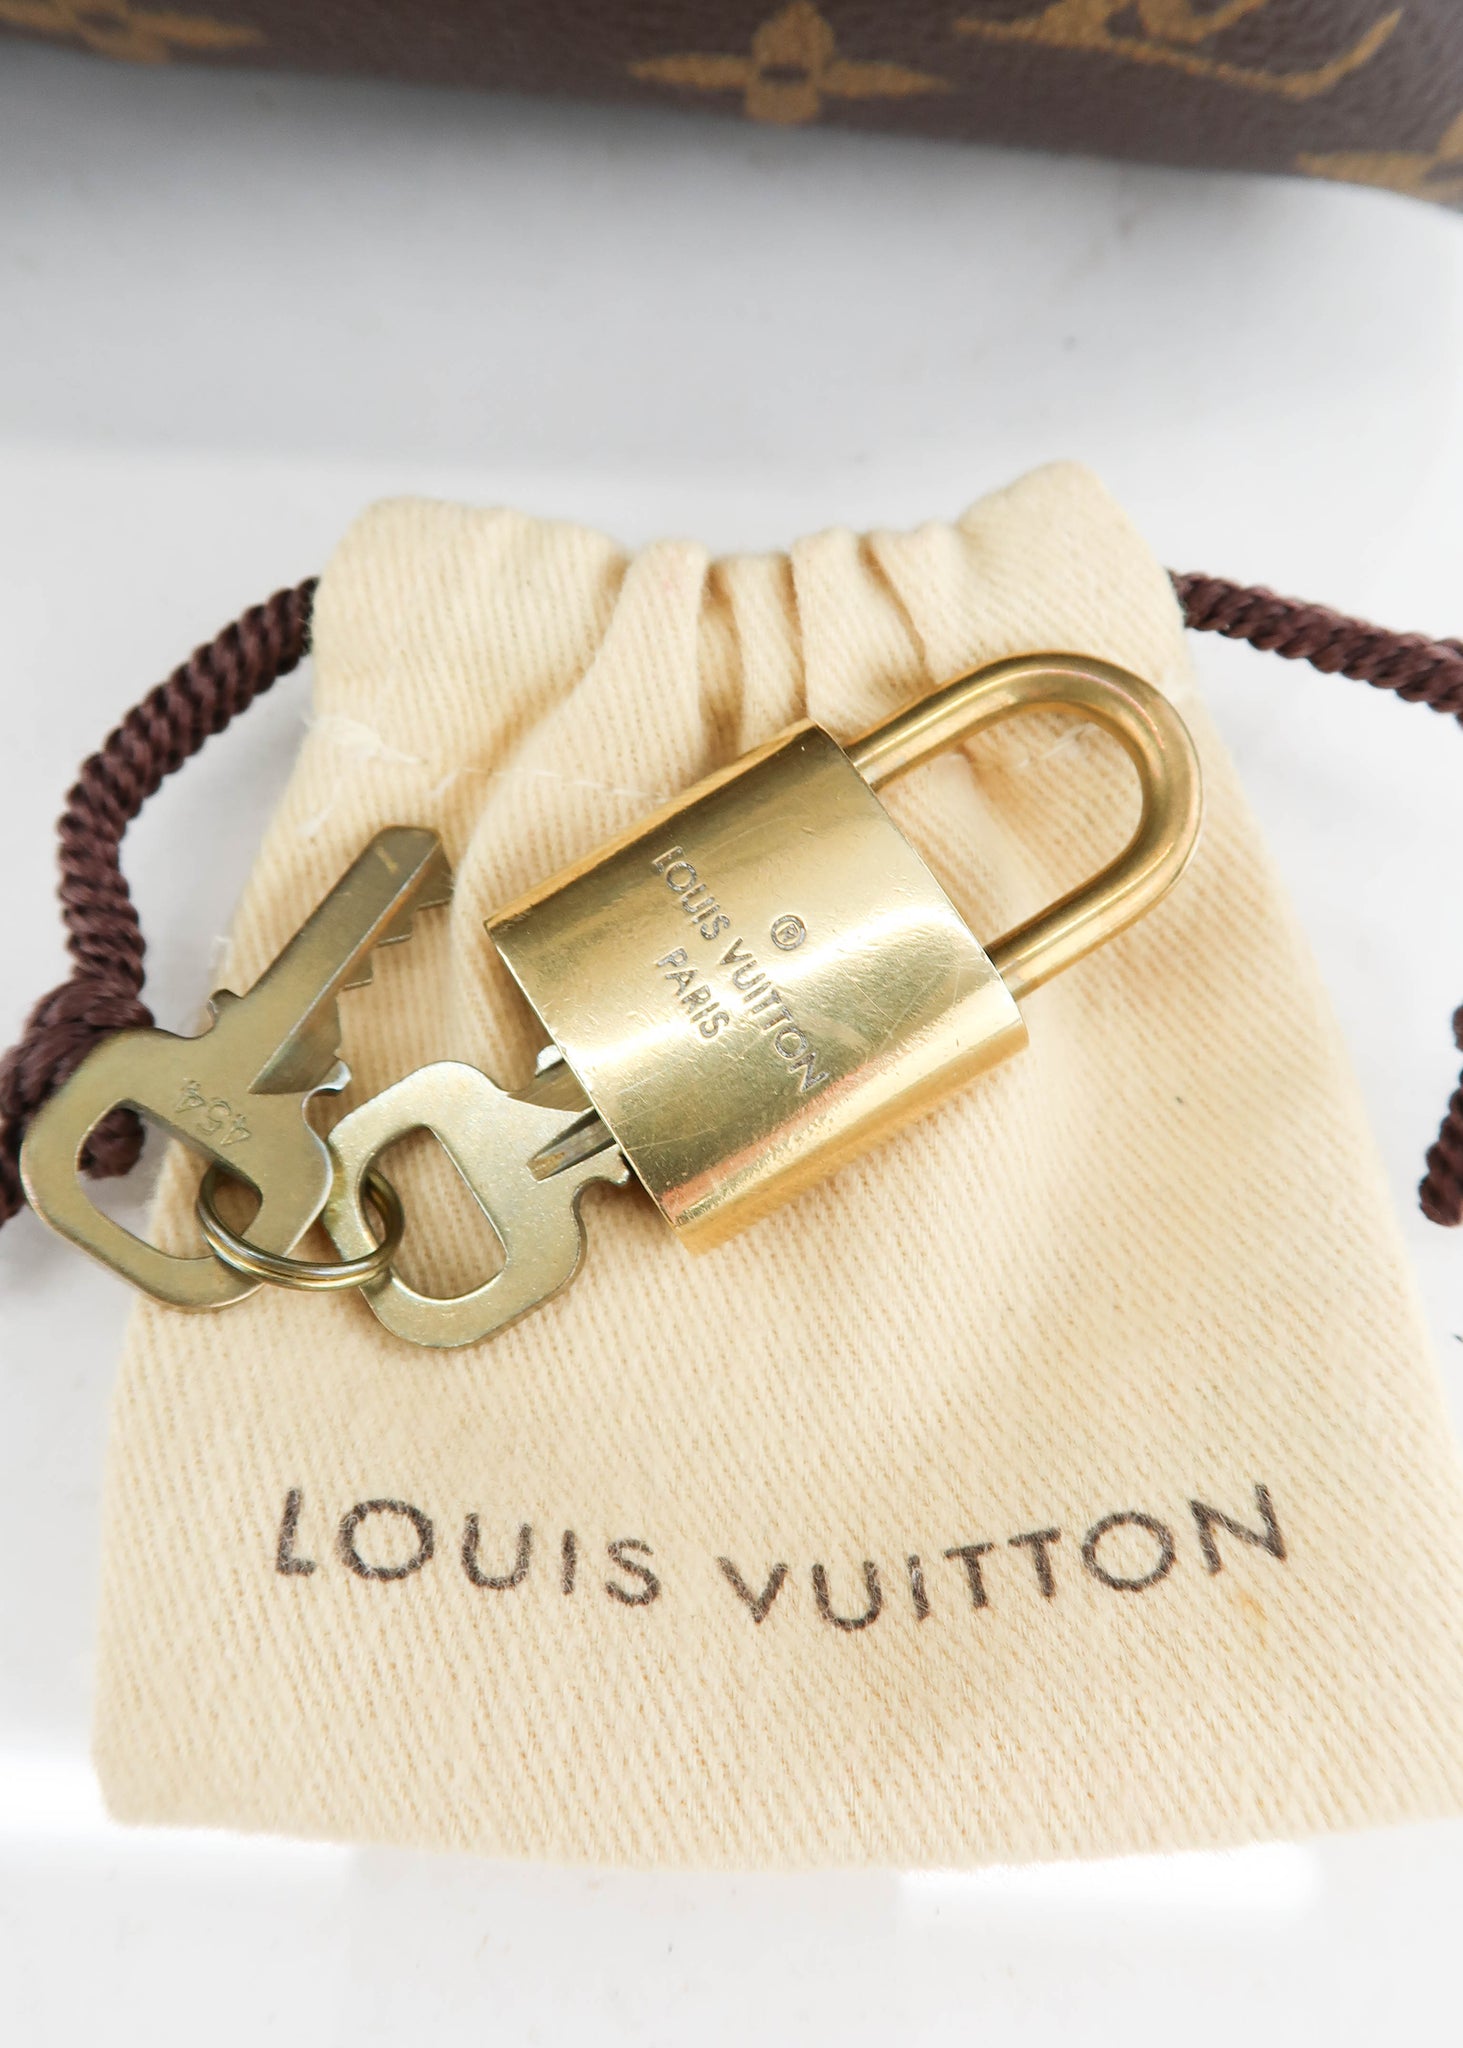 Louis Vuitton Monogram Speedy 30 Bandouliere – DAC